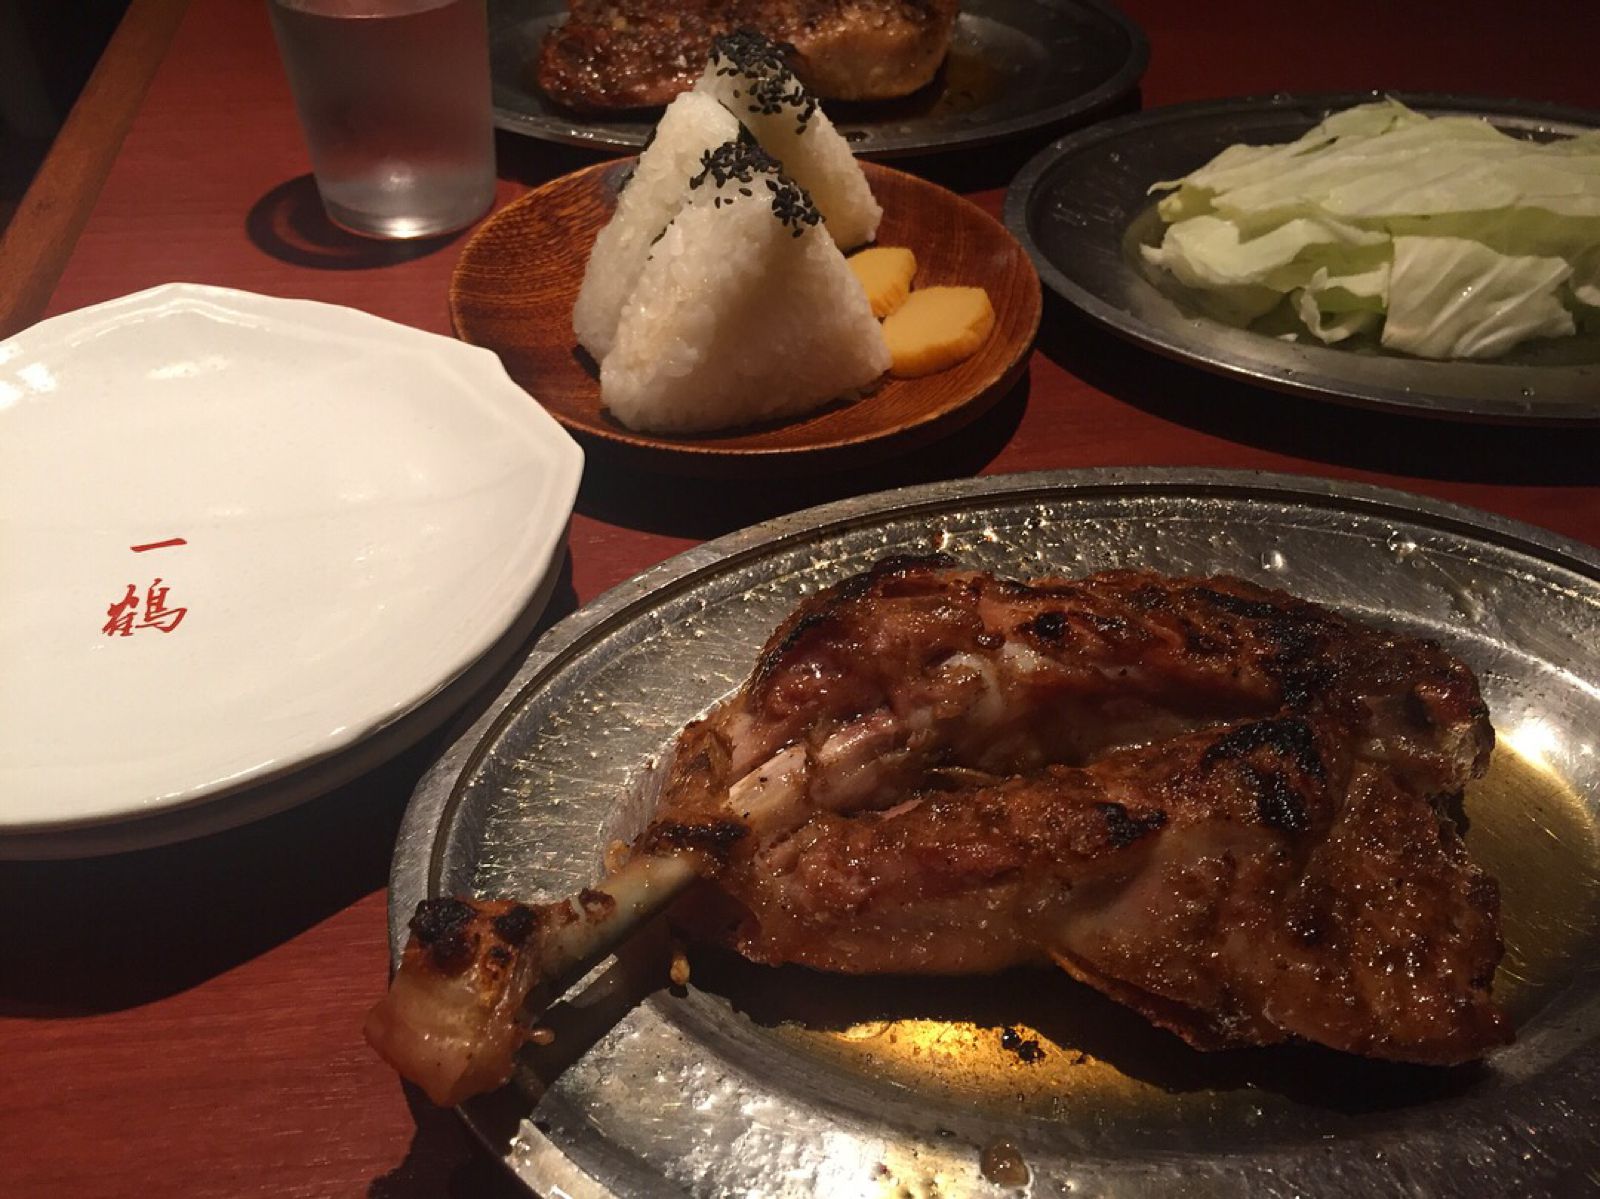 香川名物のスパイス香る絶品肉グルメ 一鶴 の骨付鳥が食べてみたい Retrip リトリップ